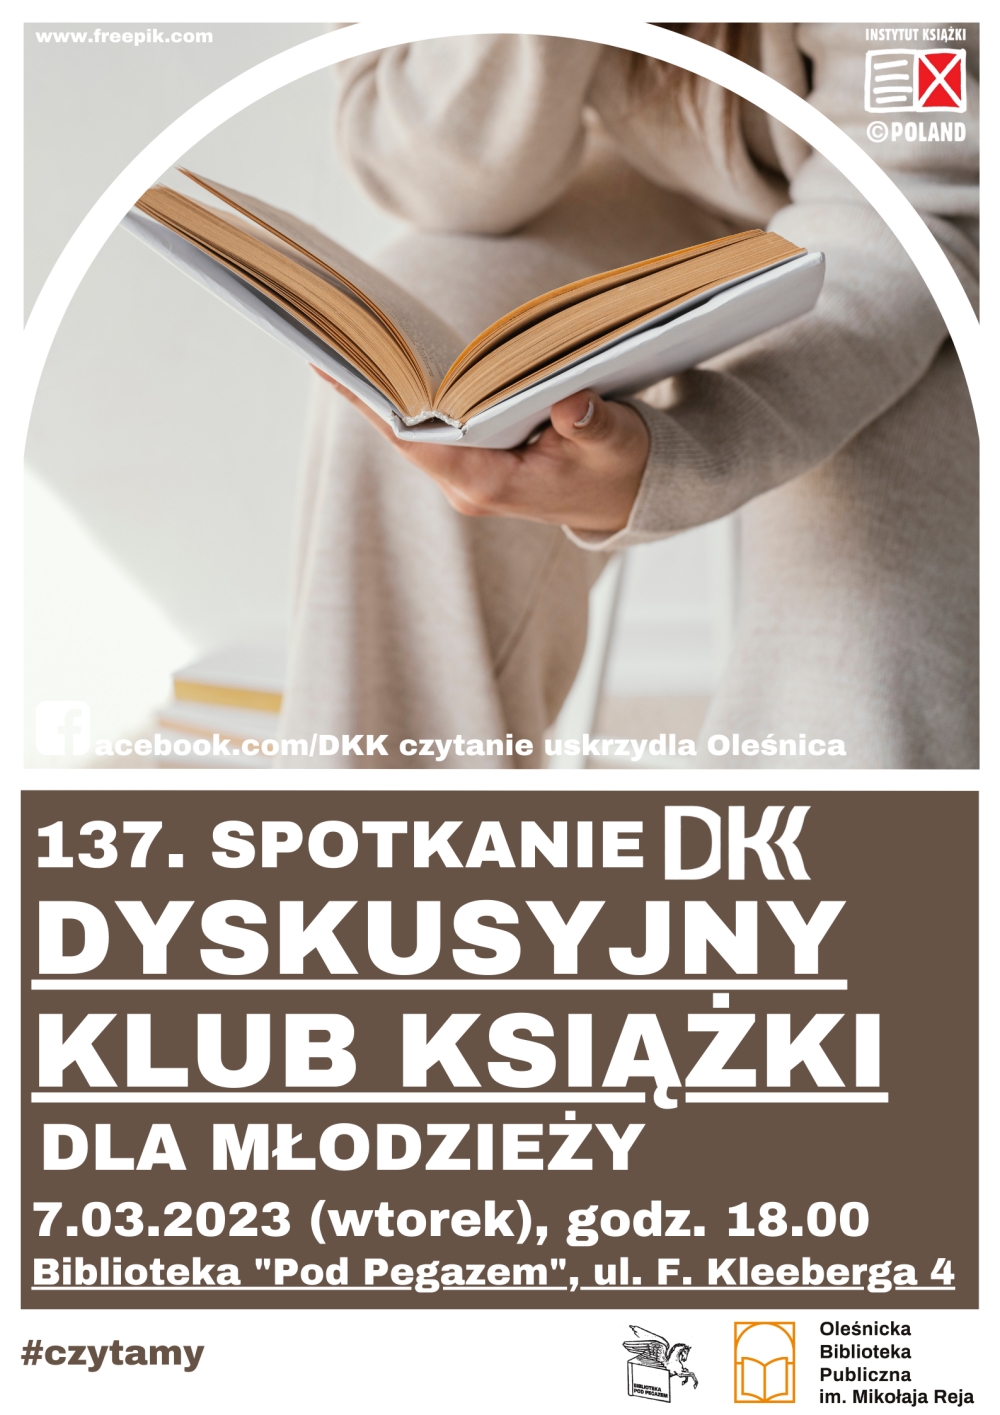 Plakat promujący 137 spotkanie w ramach DKK dla młodzieży